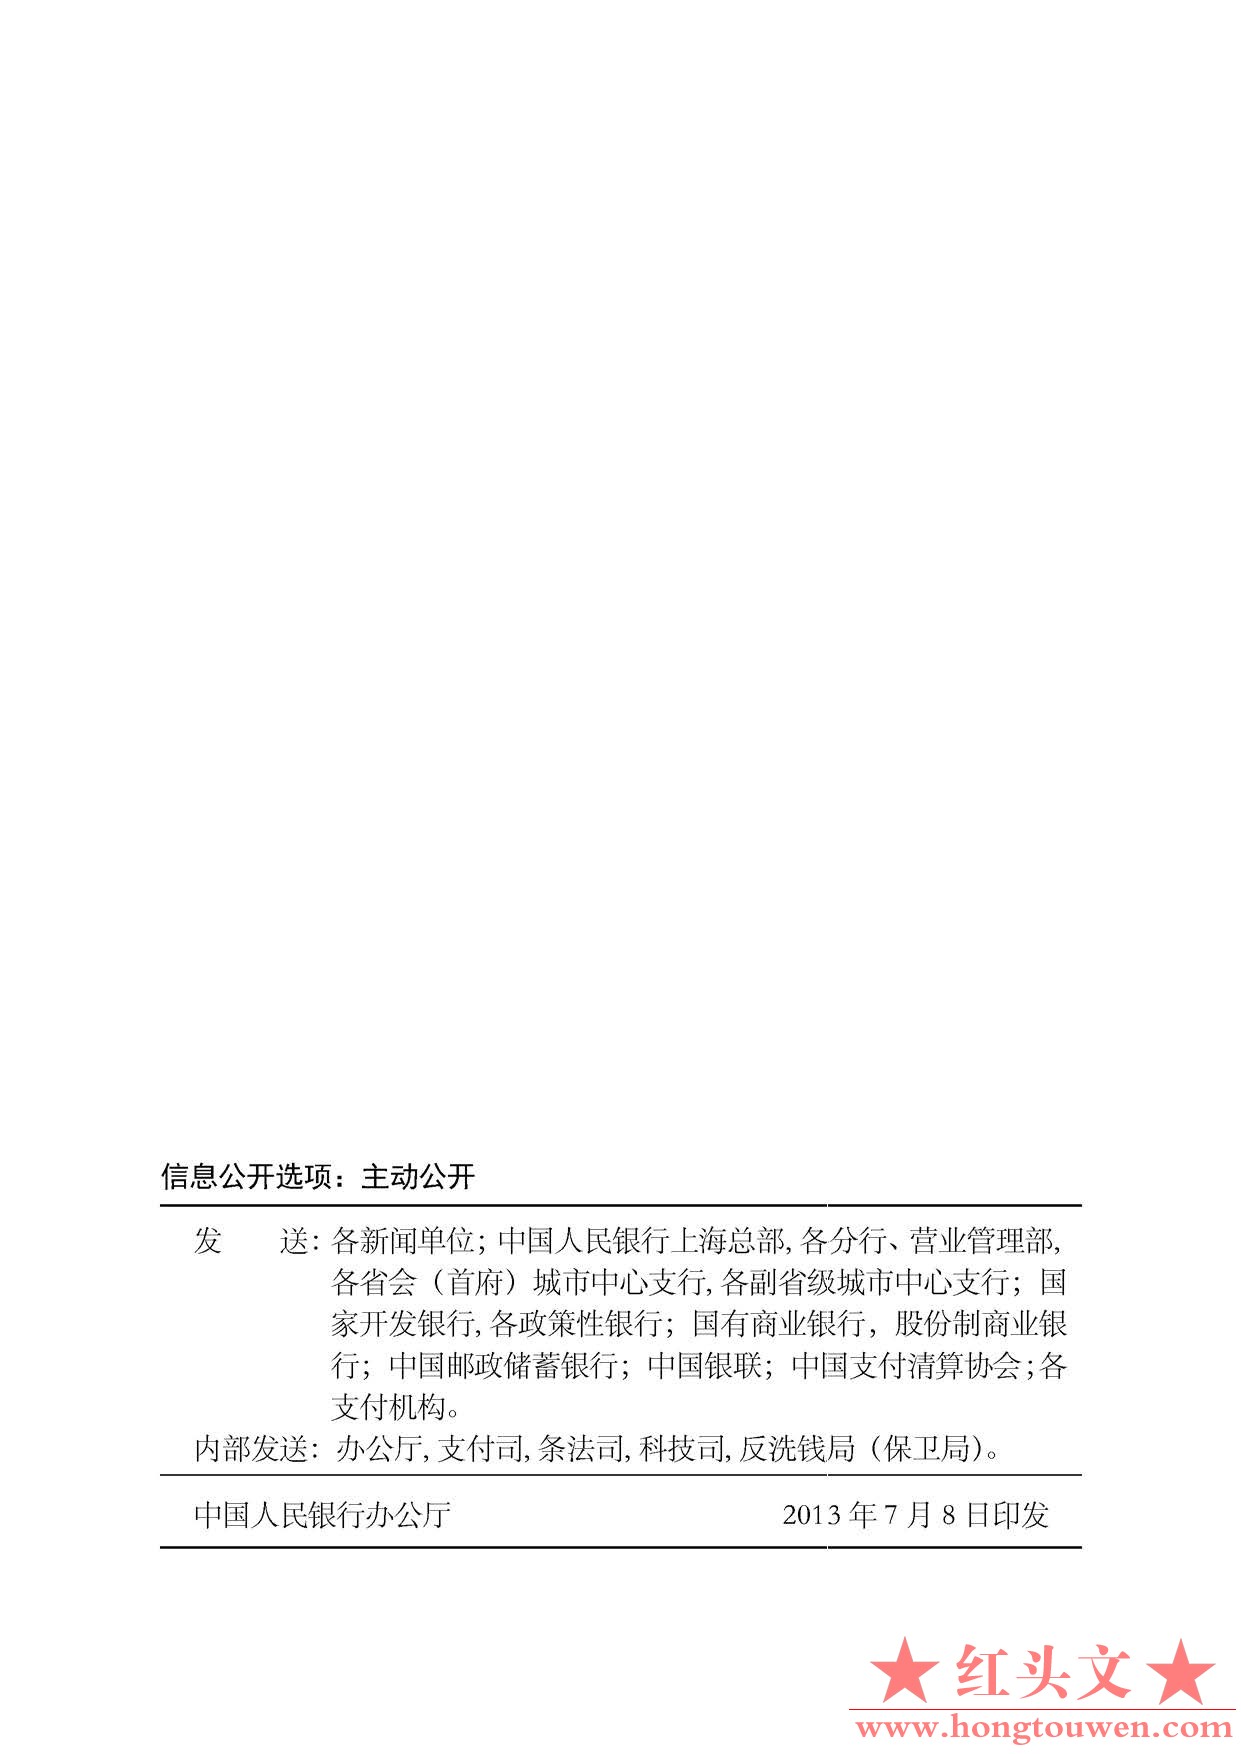 中国人民银行公告[2013]第9号-银行卡收单业务管理办法_页面_15.jpg